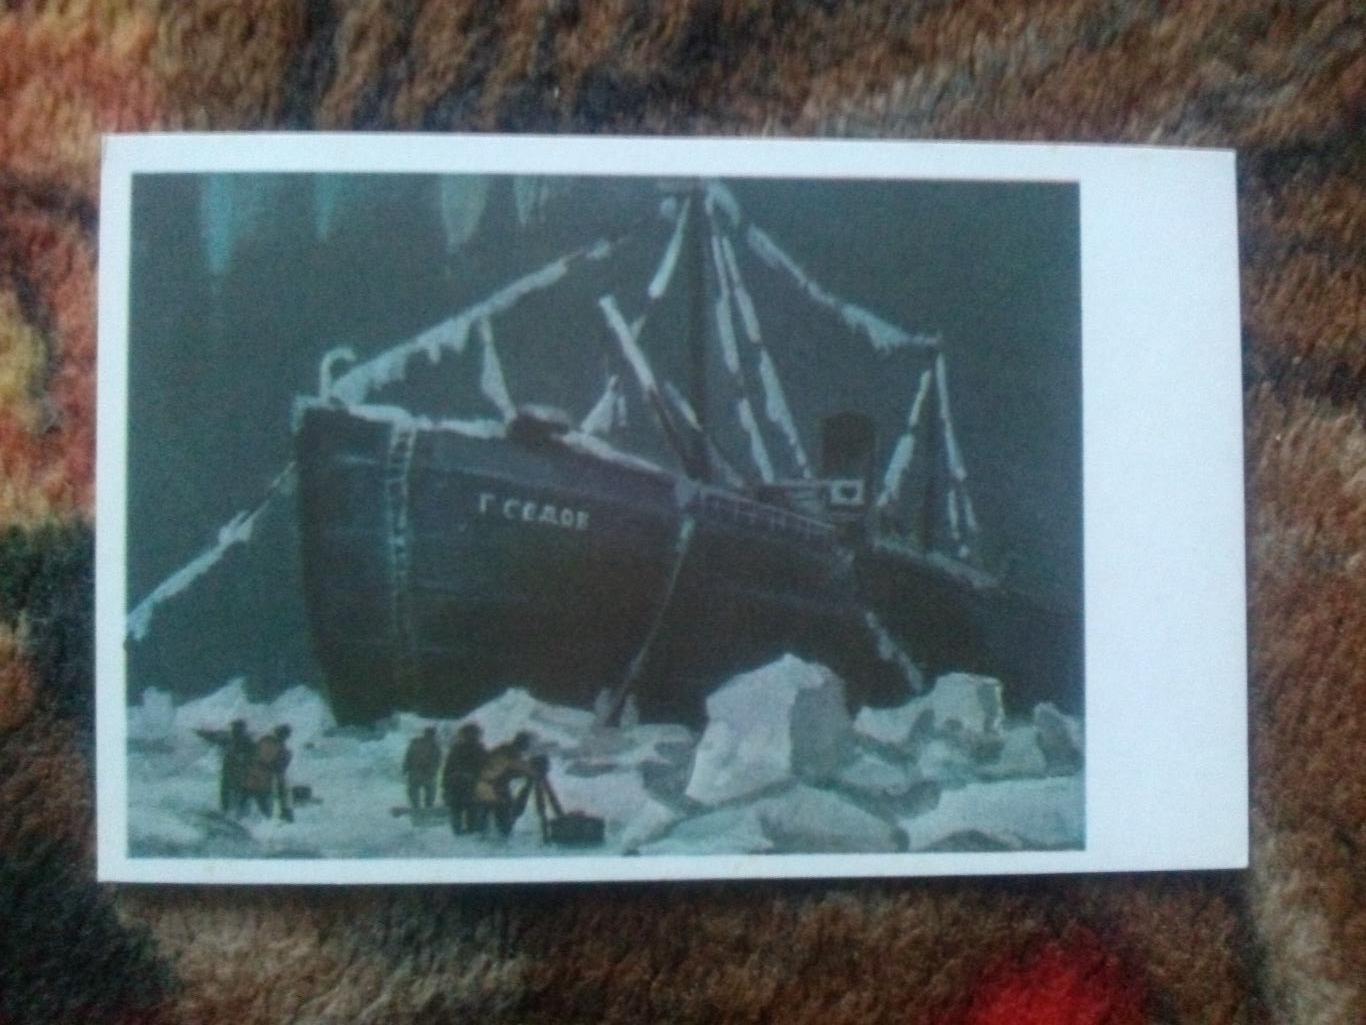 Ледокольный пароход (ледокол) Г. Седов 70-е годы (флот транспорт корабль)